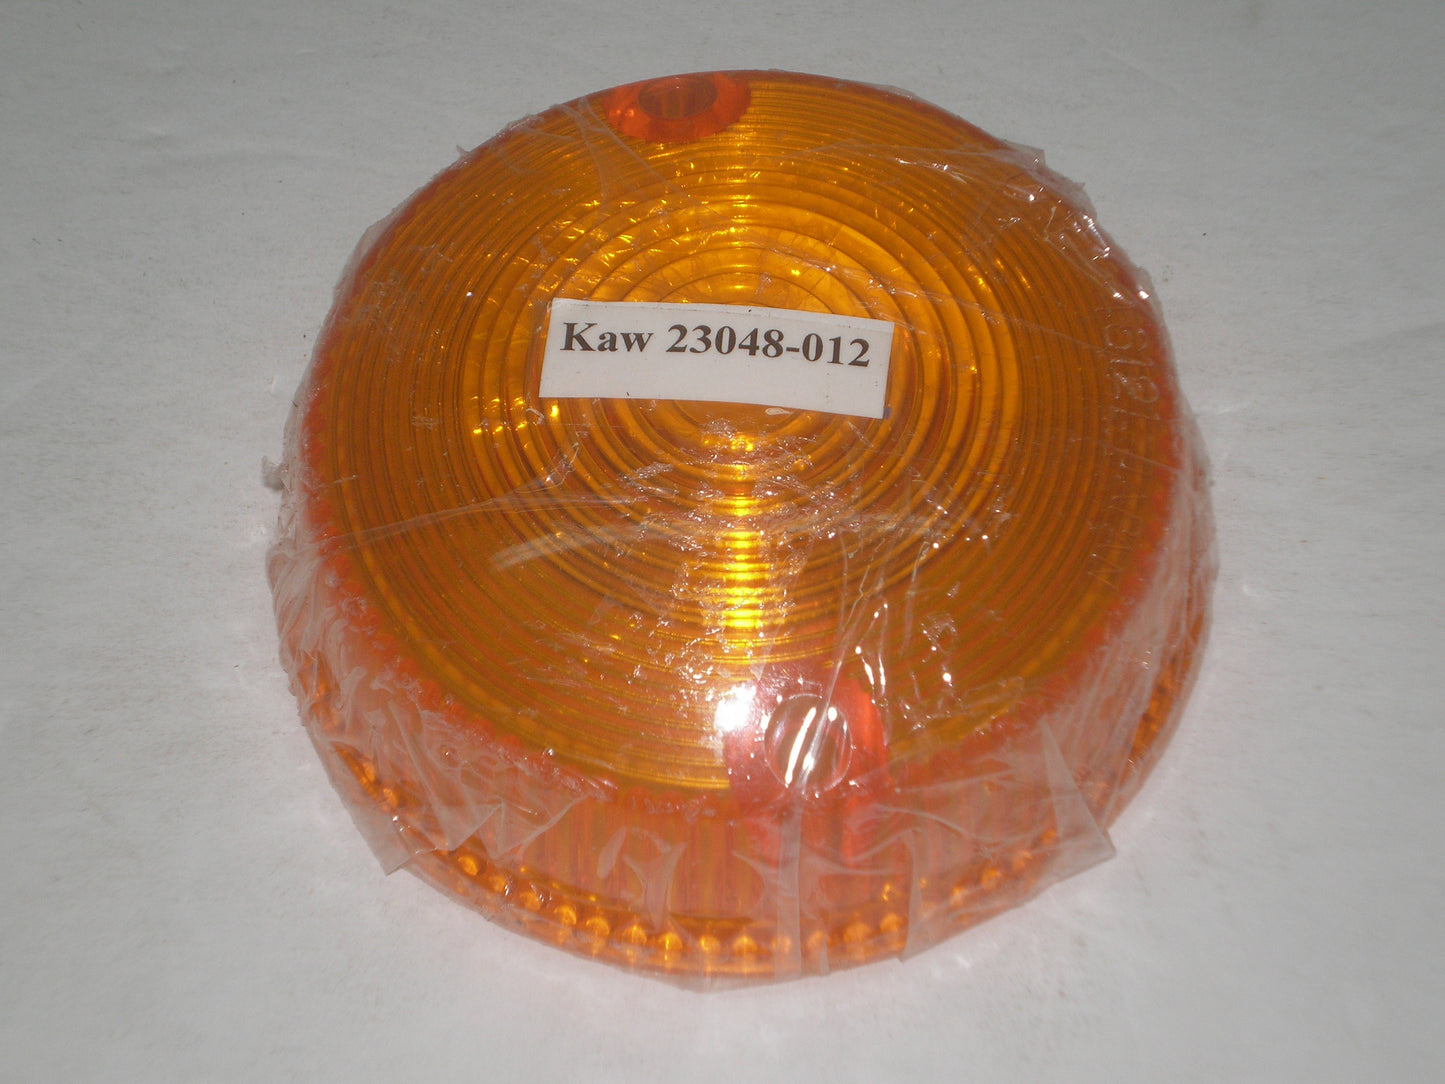 KAWASAKI H1 H2 KZ400 KZ440 KZ650 KZ750 KZ900 KZ1000 S2 Z1 Turn Signal Lens 23048-1024 / 23048-012